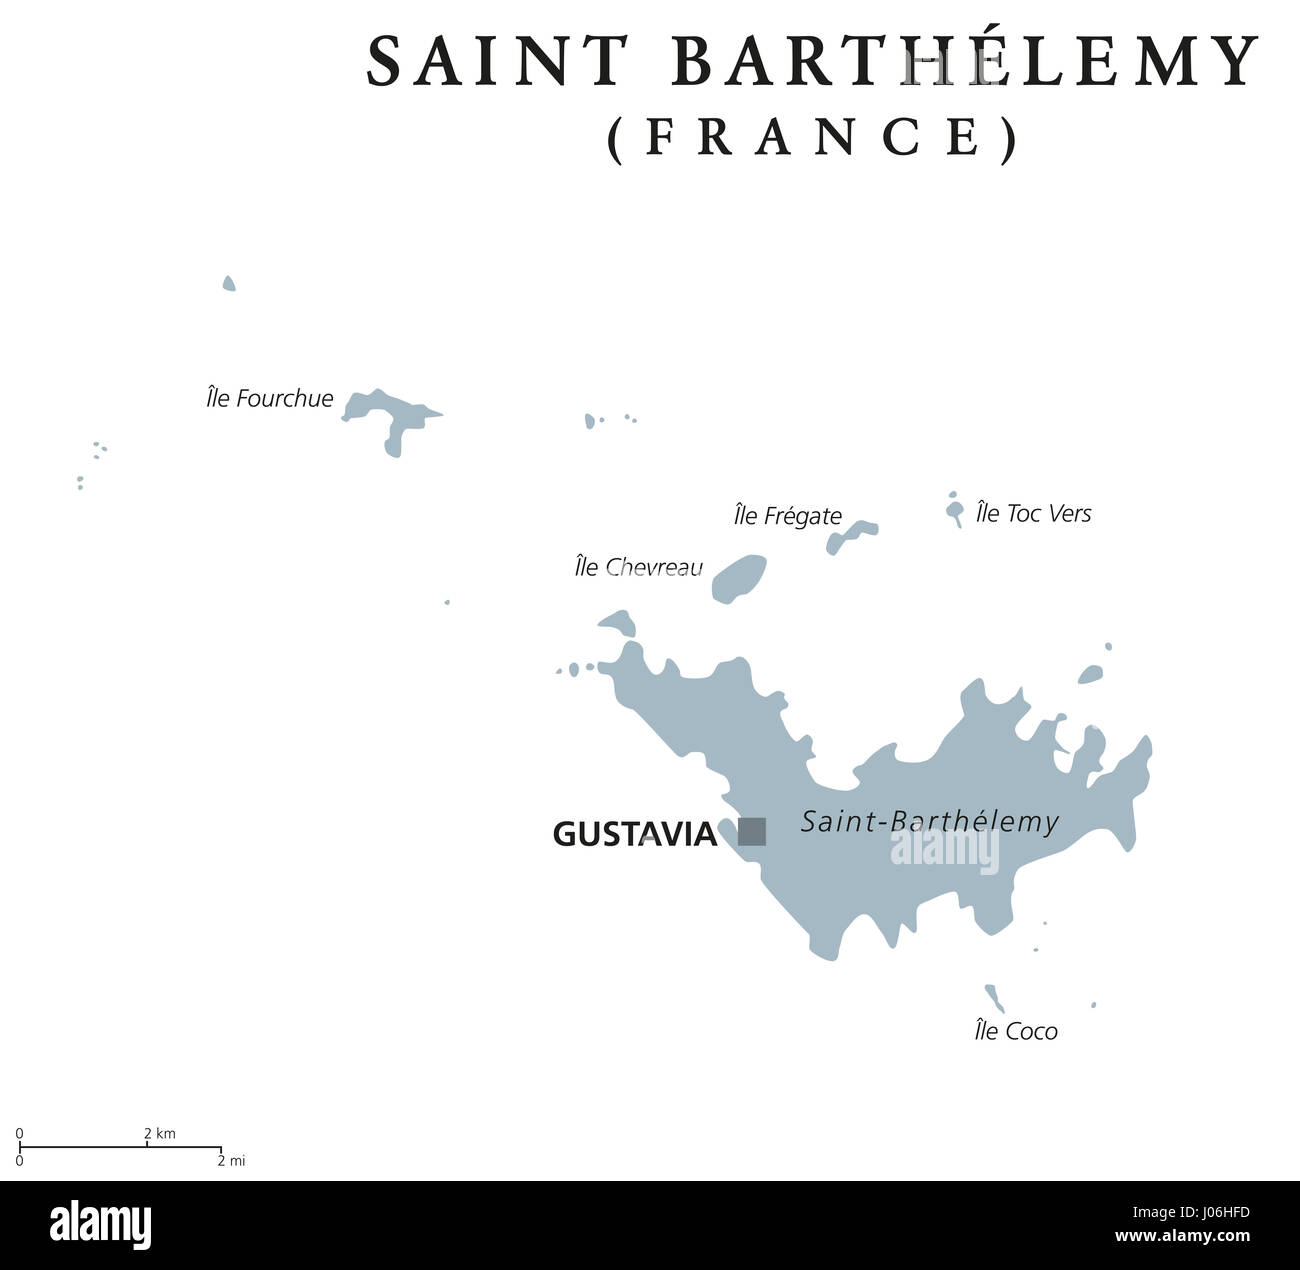 Saint Barthelemy politische Karte mit Hauptstadt Gustavia. Gebietskörperschaft Frankreichs in der Karibik. Auch St. Barths, St. Barts, Ouanalao. Stockfoto